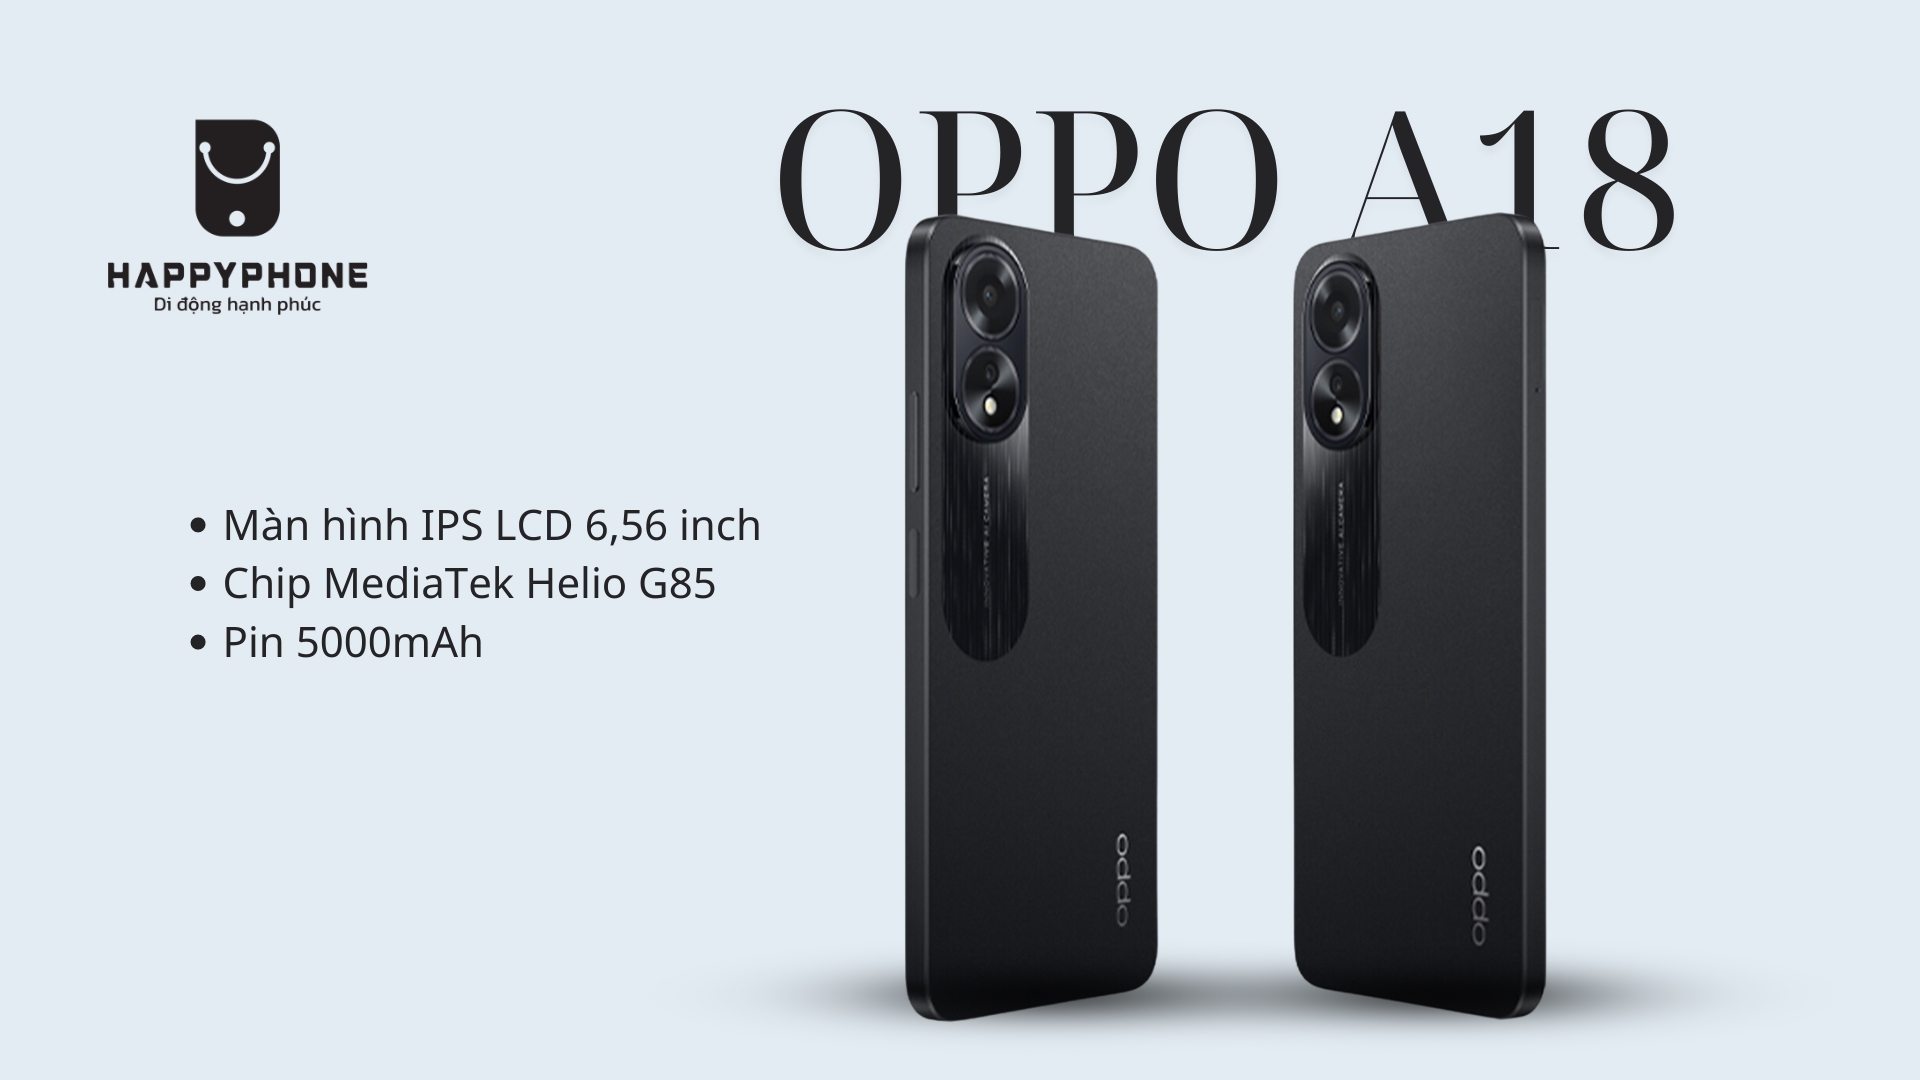 Oppo A18 mang đến thiết kế đẹp và hiệu năng ổn định